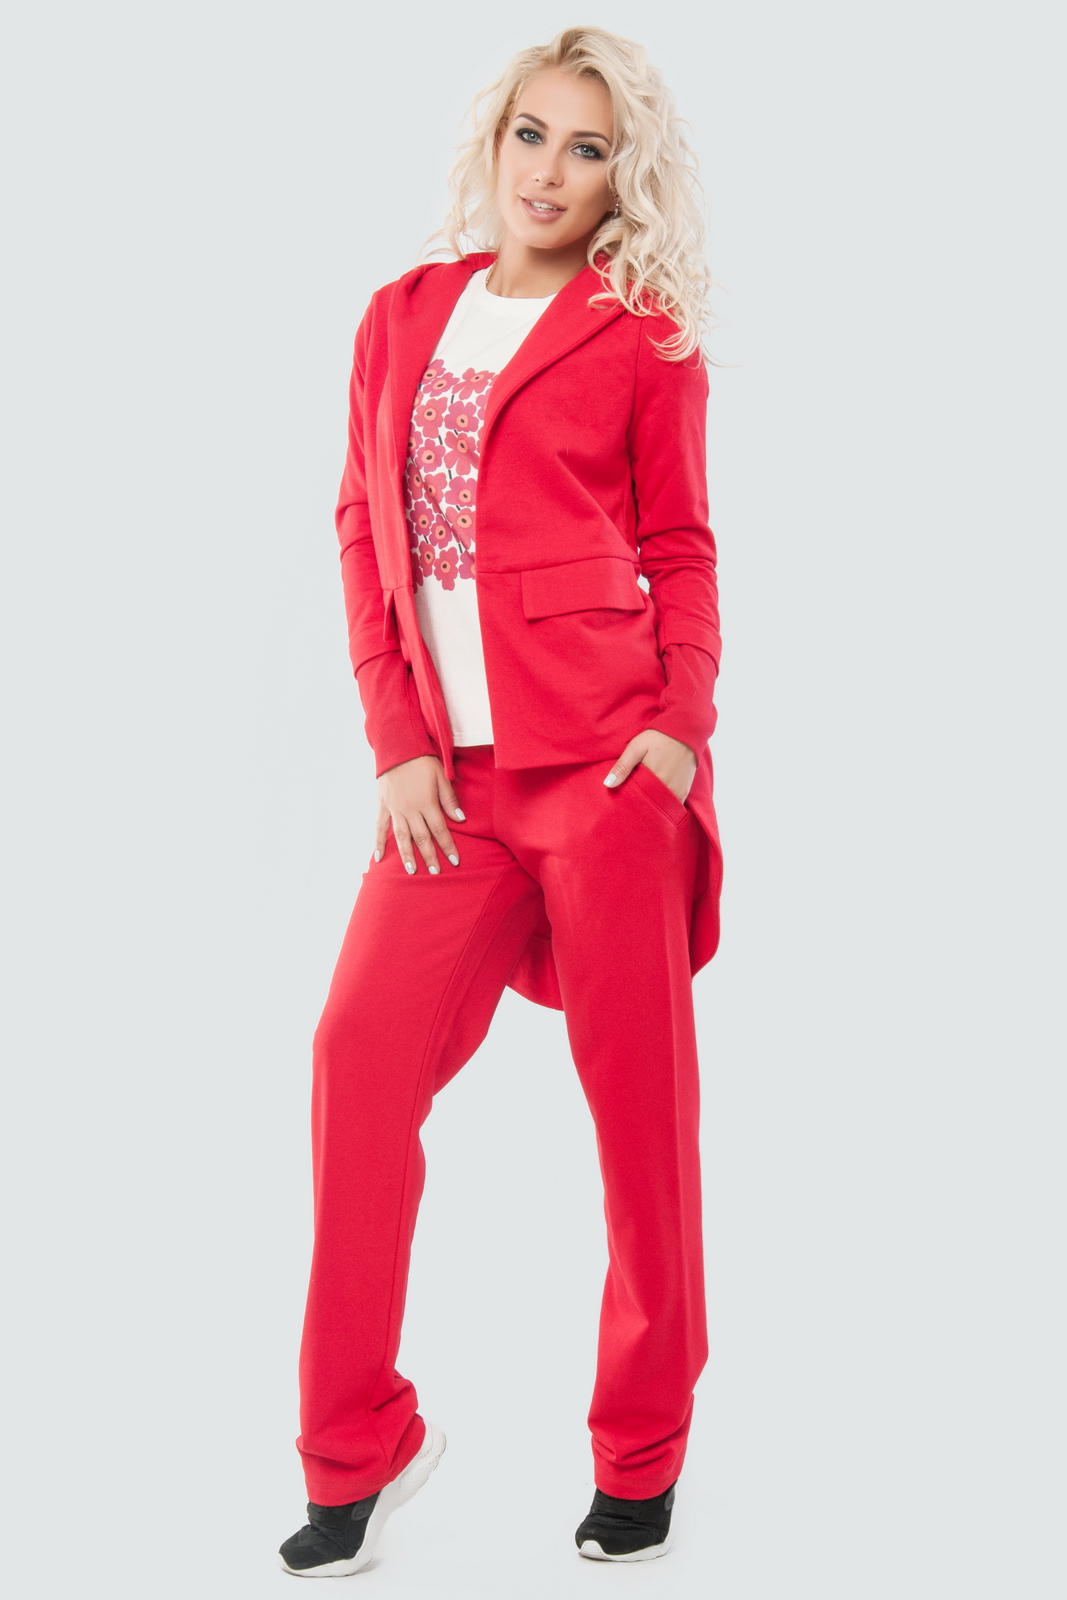 Спортивные костюмы red. Женщина в спортивном костюме. Спортивный костюм женский. Красный спортивный костюм. Классический спортивный костюм женский.